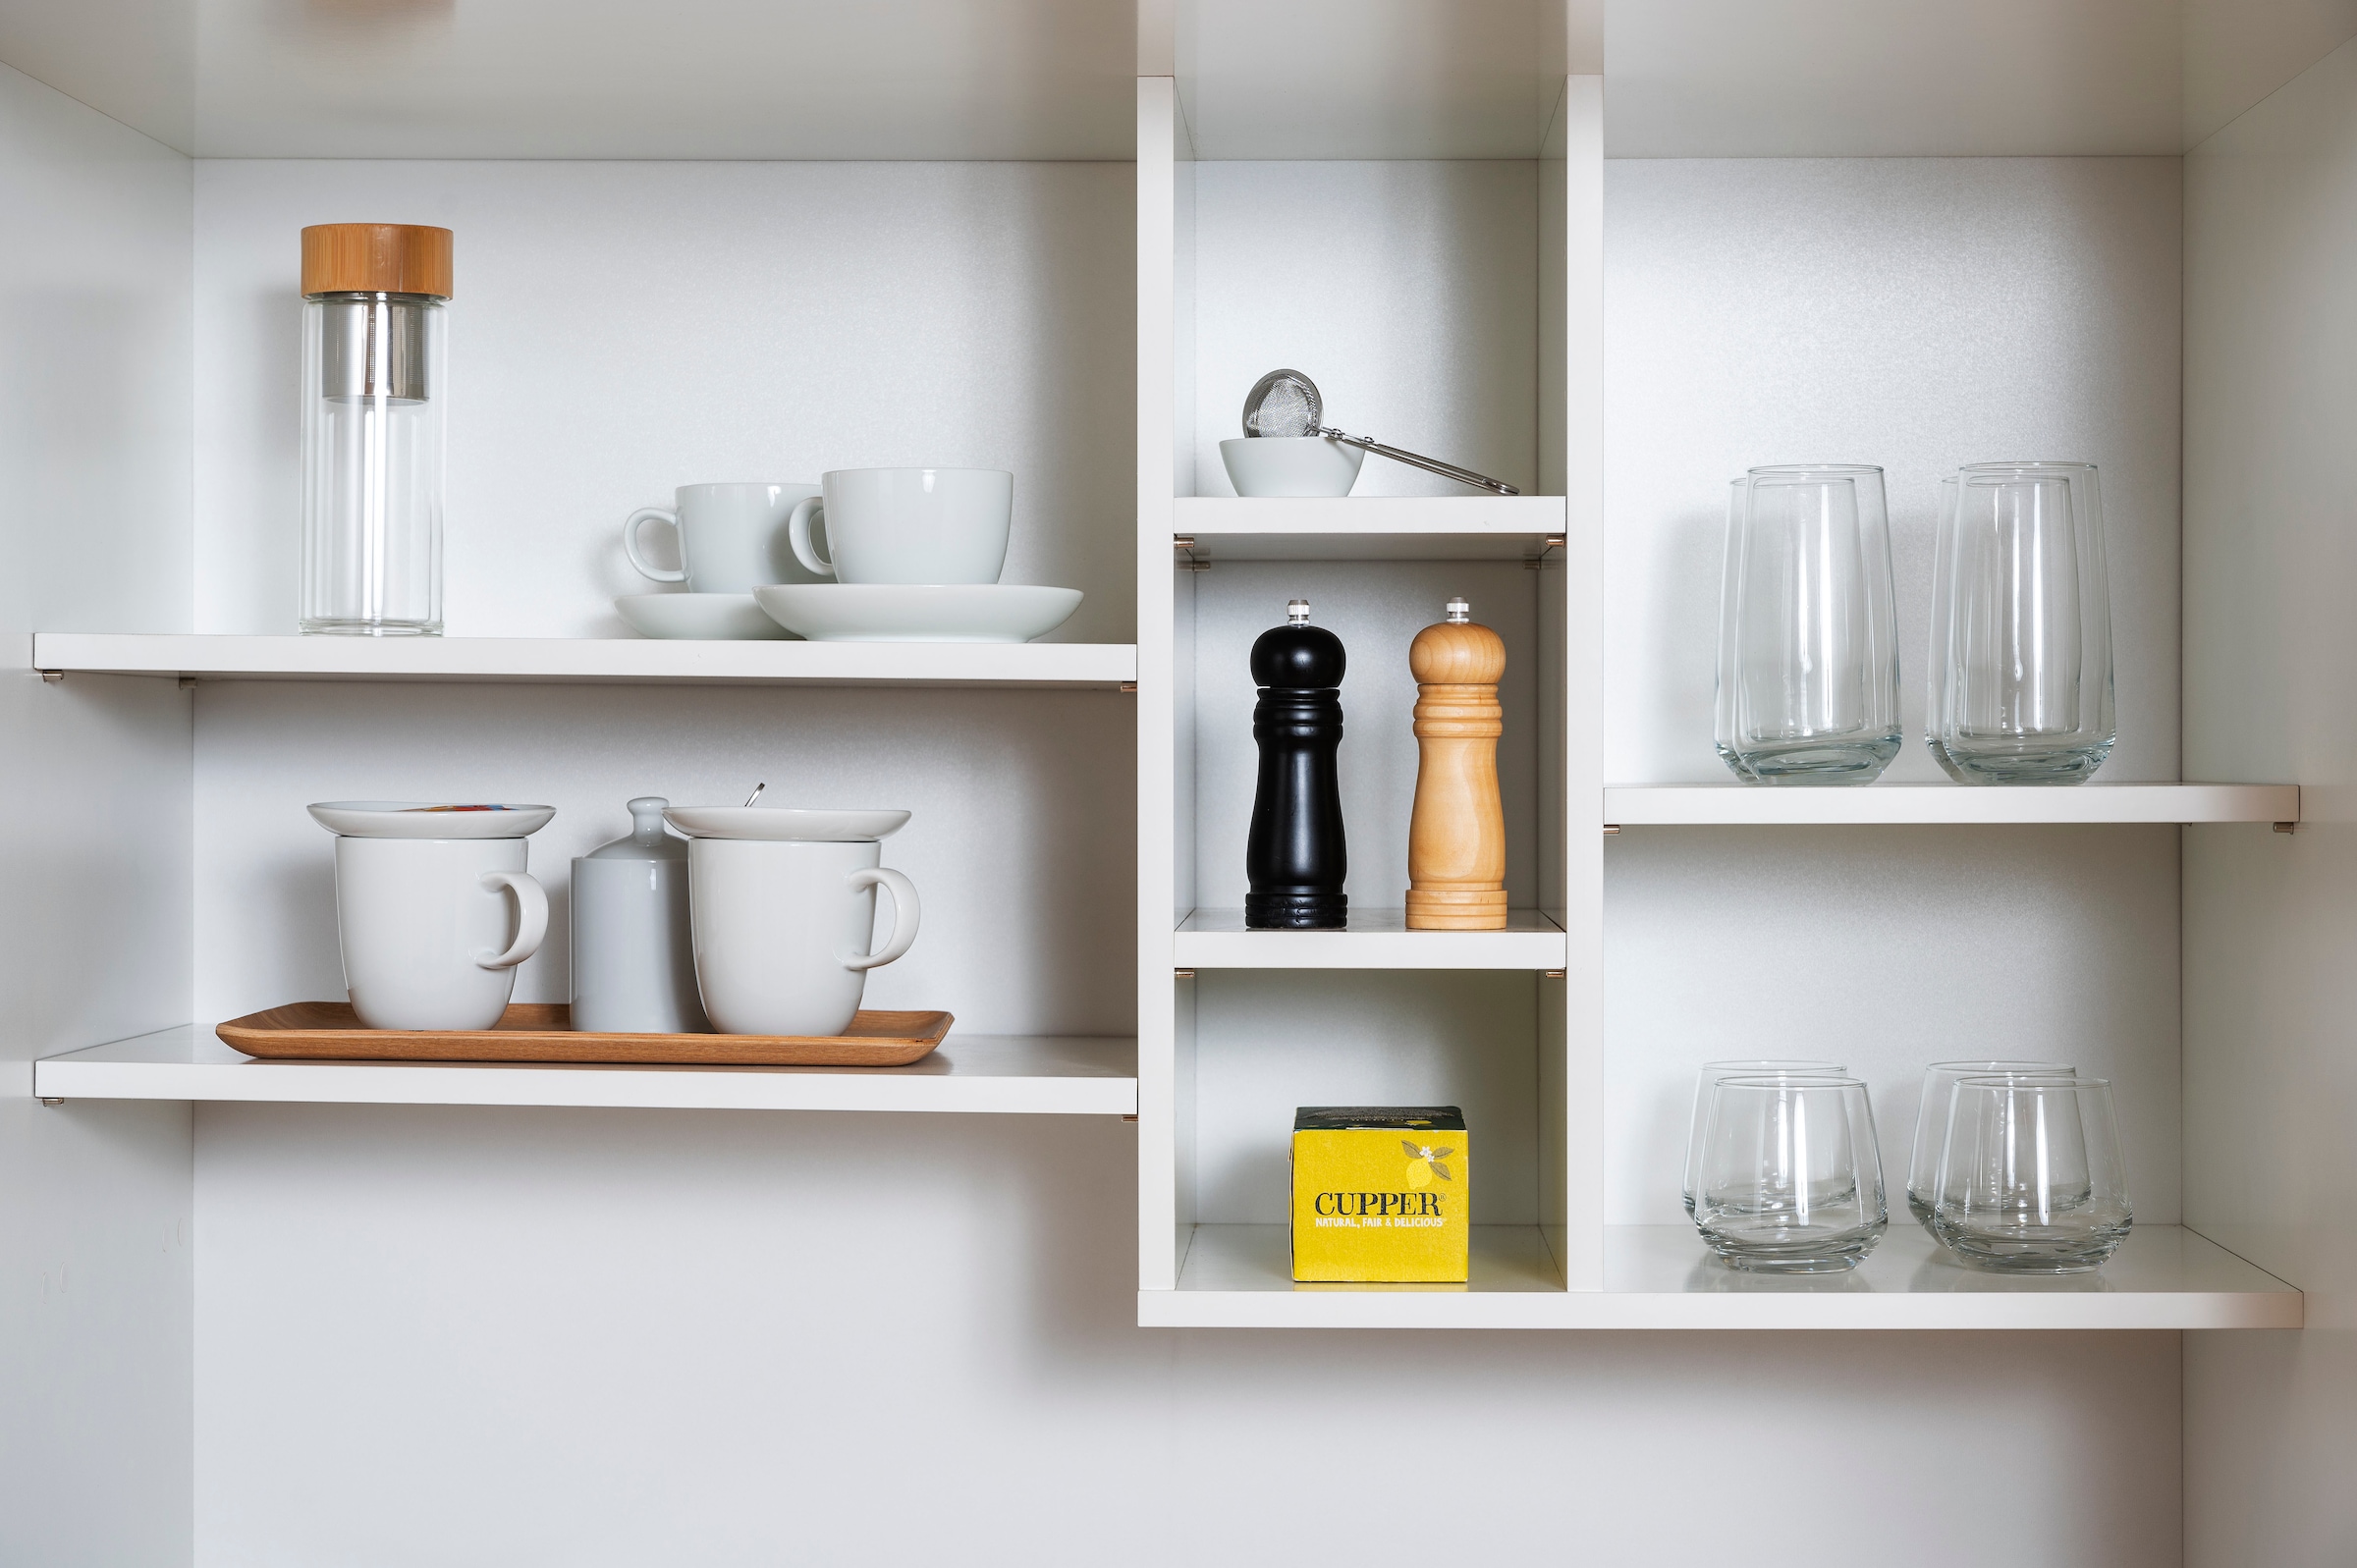 RESPEKTA Küche »Luis, mit Duo Kochfeld, wahlweise mit Mikrowelle, Korpus Weiß,«, Breite 104 cm